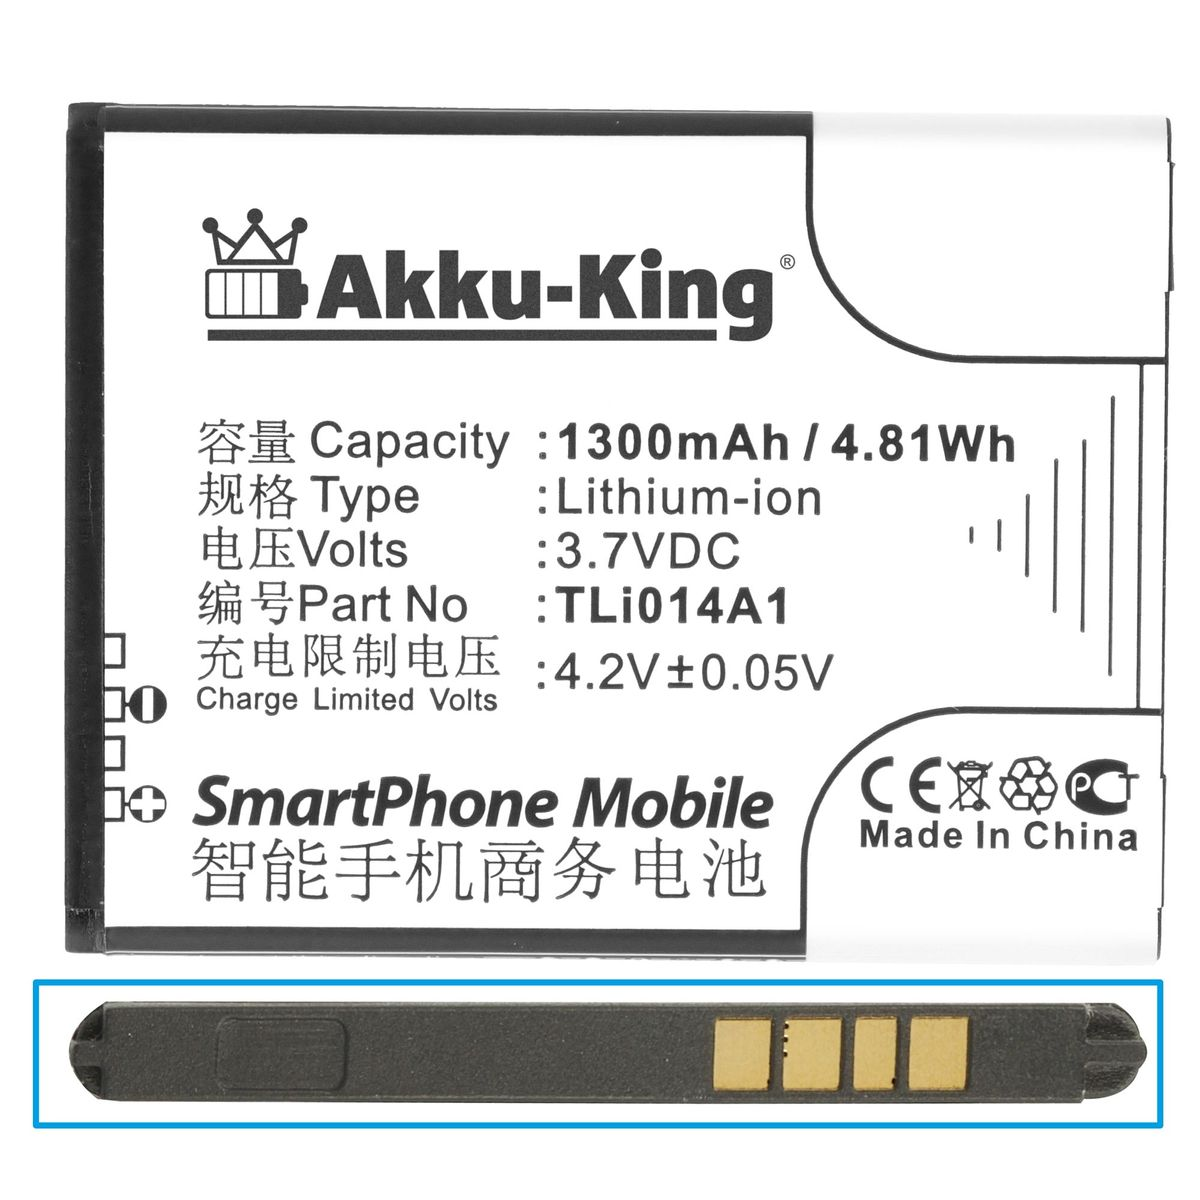 AKKU-KING Akku für Handy-Akku, Tli014A1 Volt, 1300mAh Alcatet Li-Ion 3.7